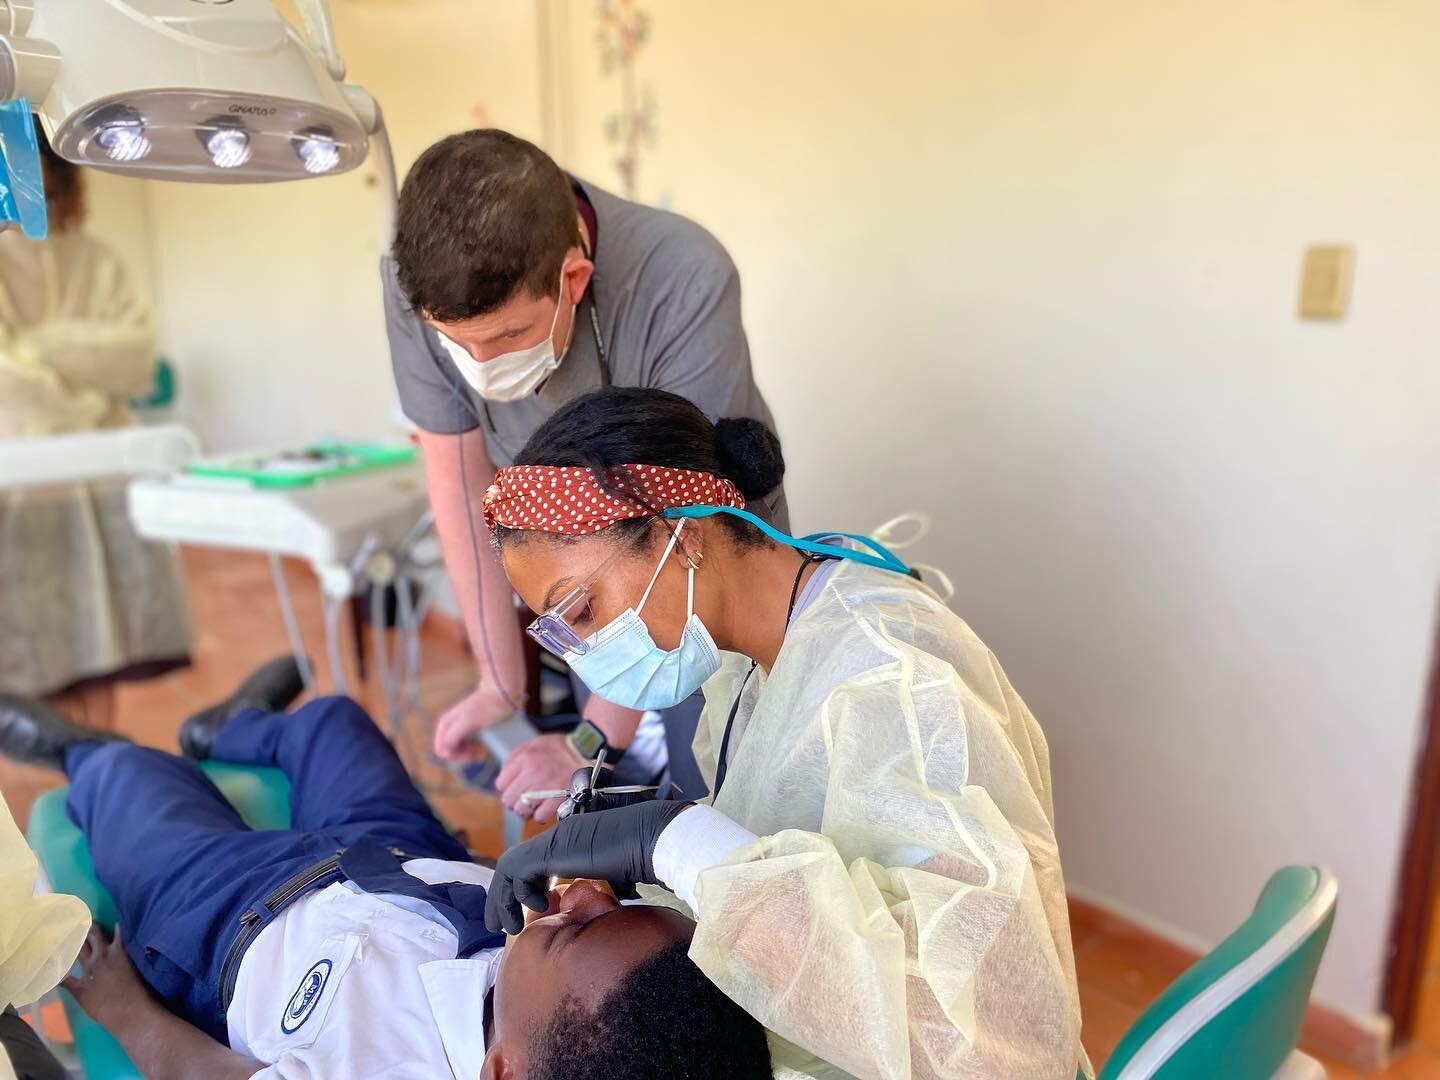 &iexcl;Un d&iacute;a m&aacute;s en nuestro operativo dental! Mejorando la salud bucal de nuestra comunidad en La Romana. #FundacionMIR #AyudandoaSer